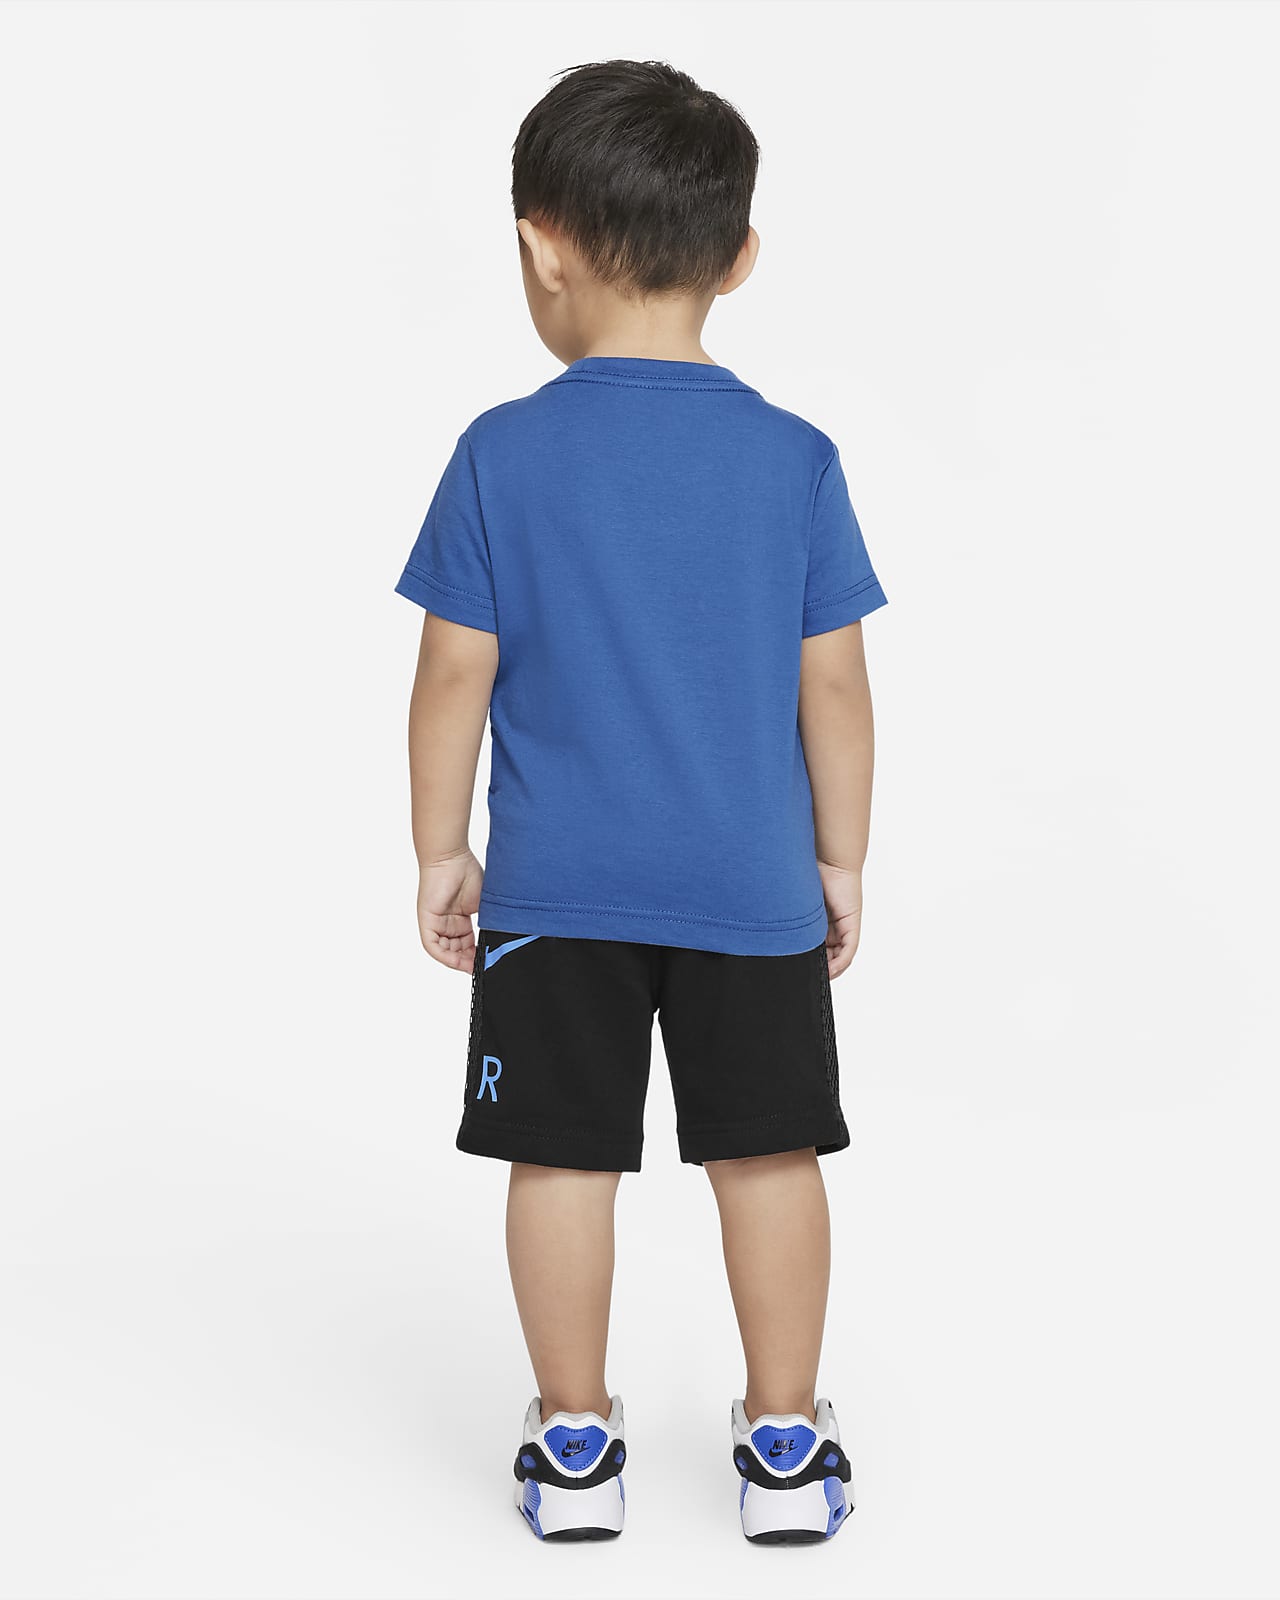 Nike Shorts Set - T-shirt/Shorts - Air - Black/Blue